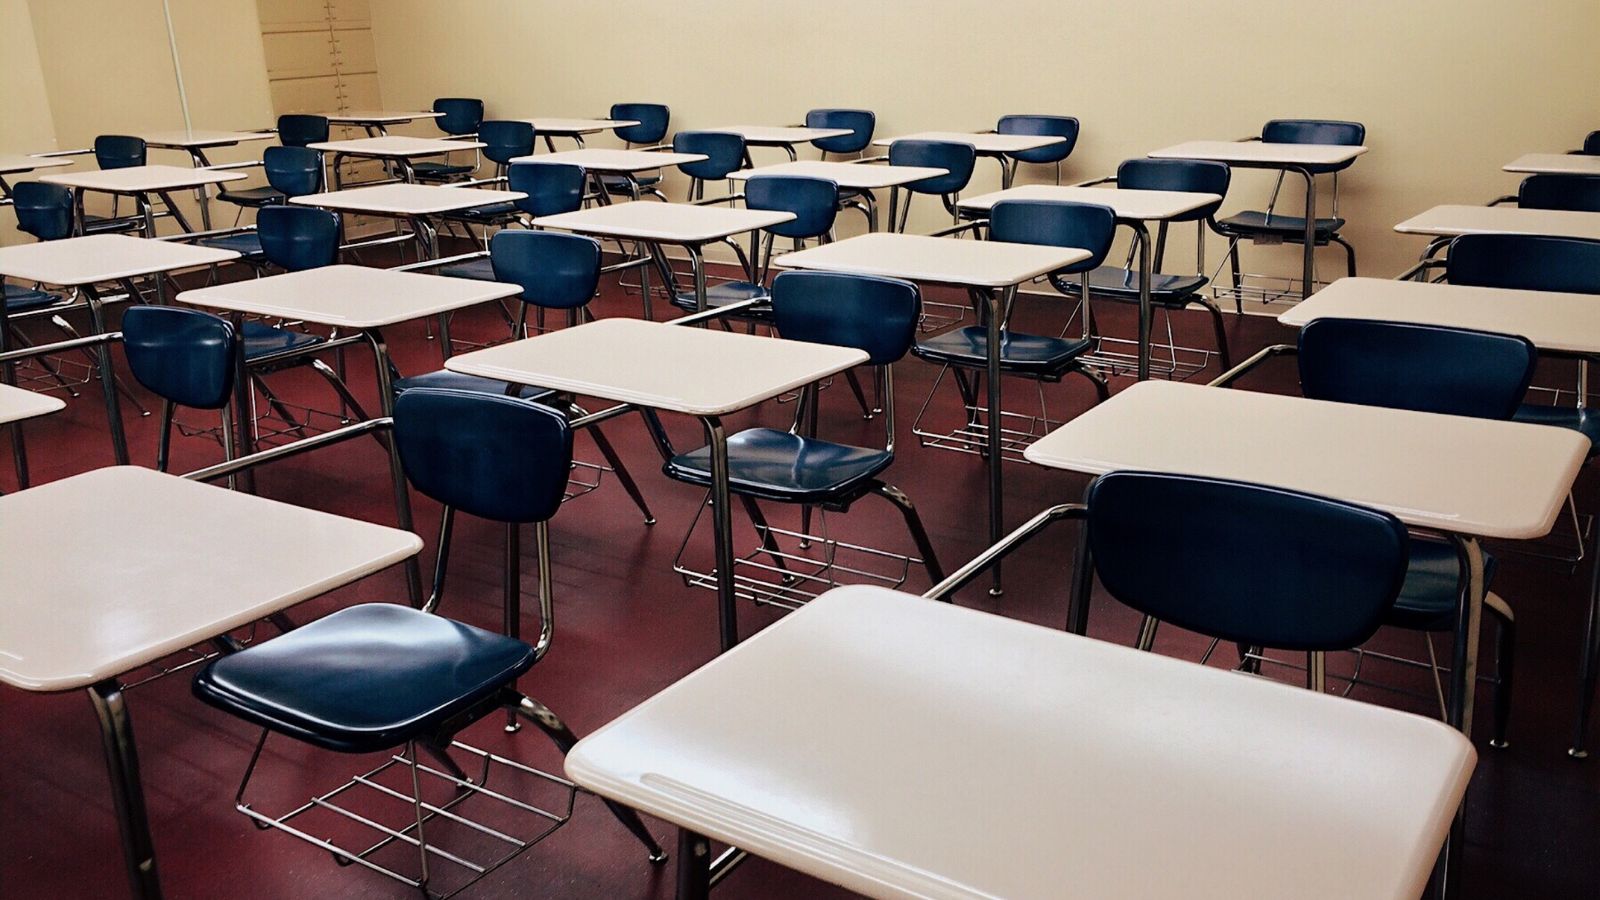 Carlton School Board Approves Change to Four Day School Week